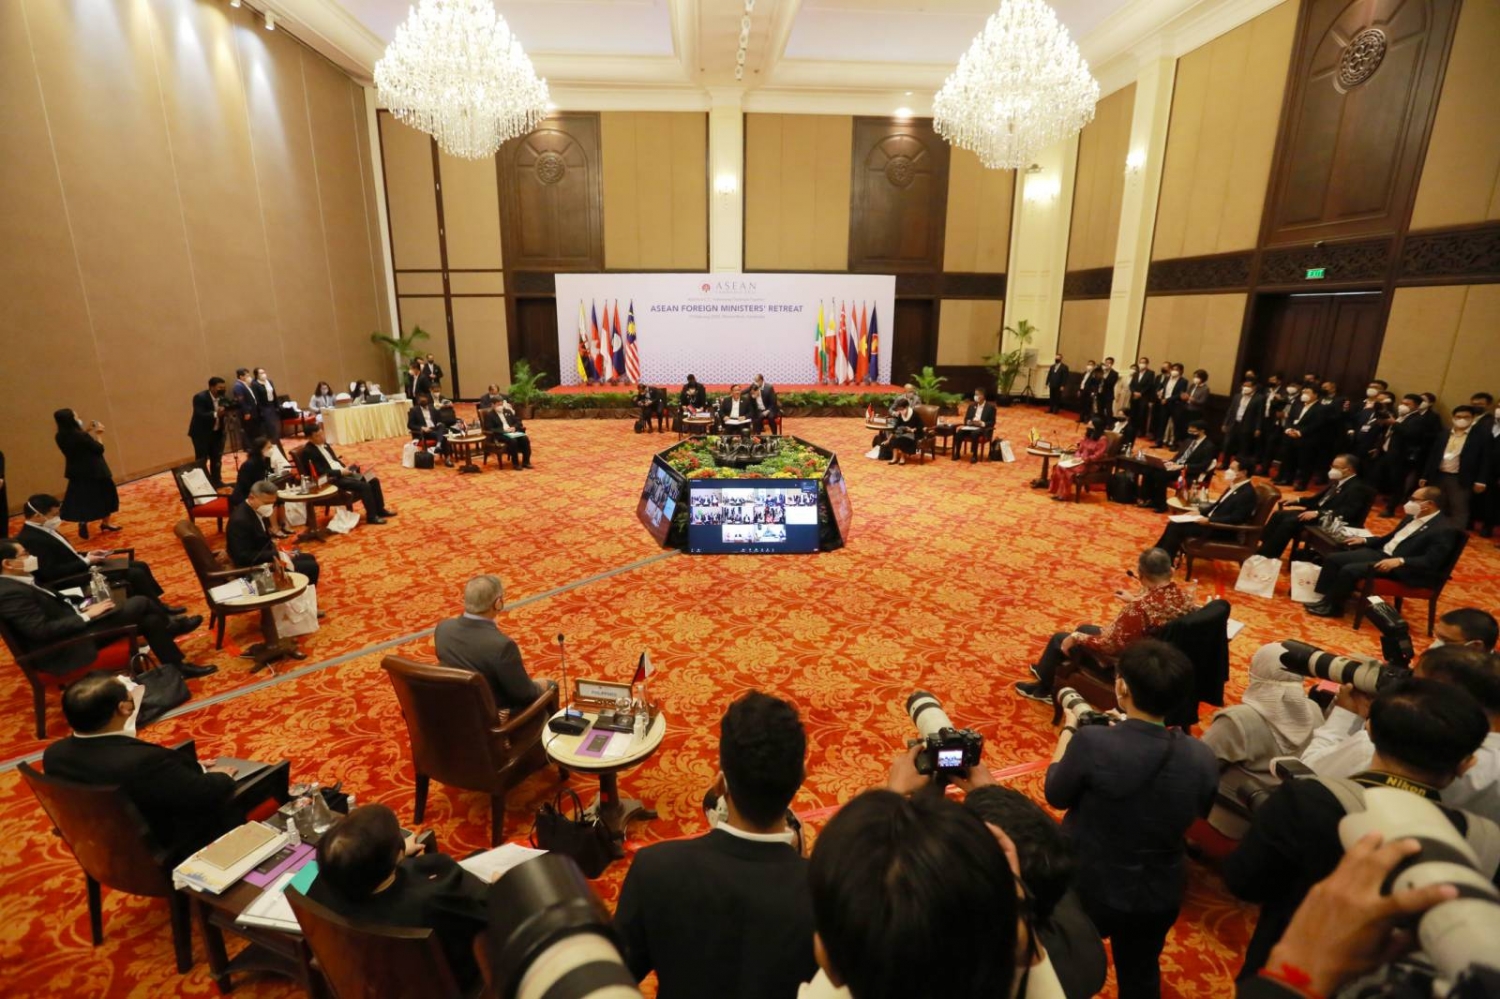 Hội nghị hẹp các Bộ trưởng Ngoại giao ASEAN